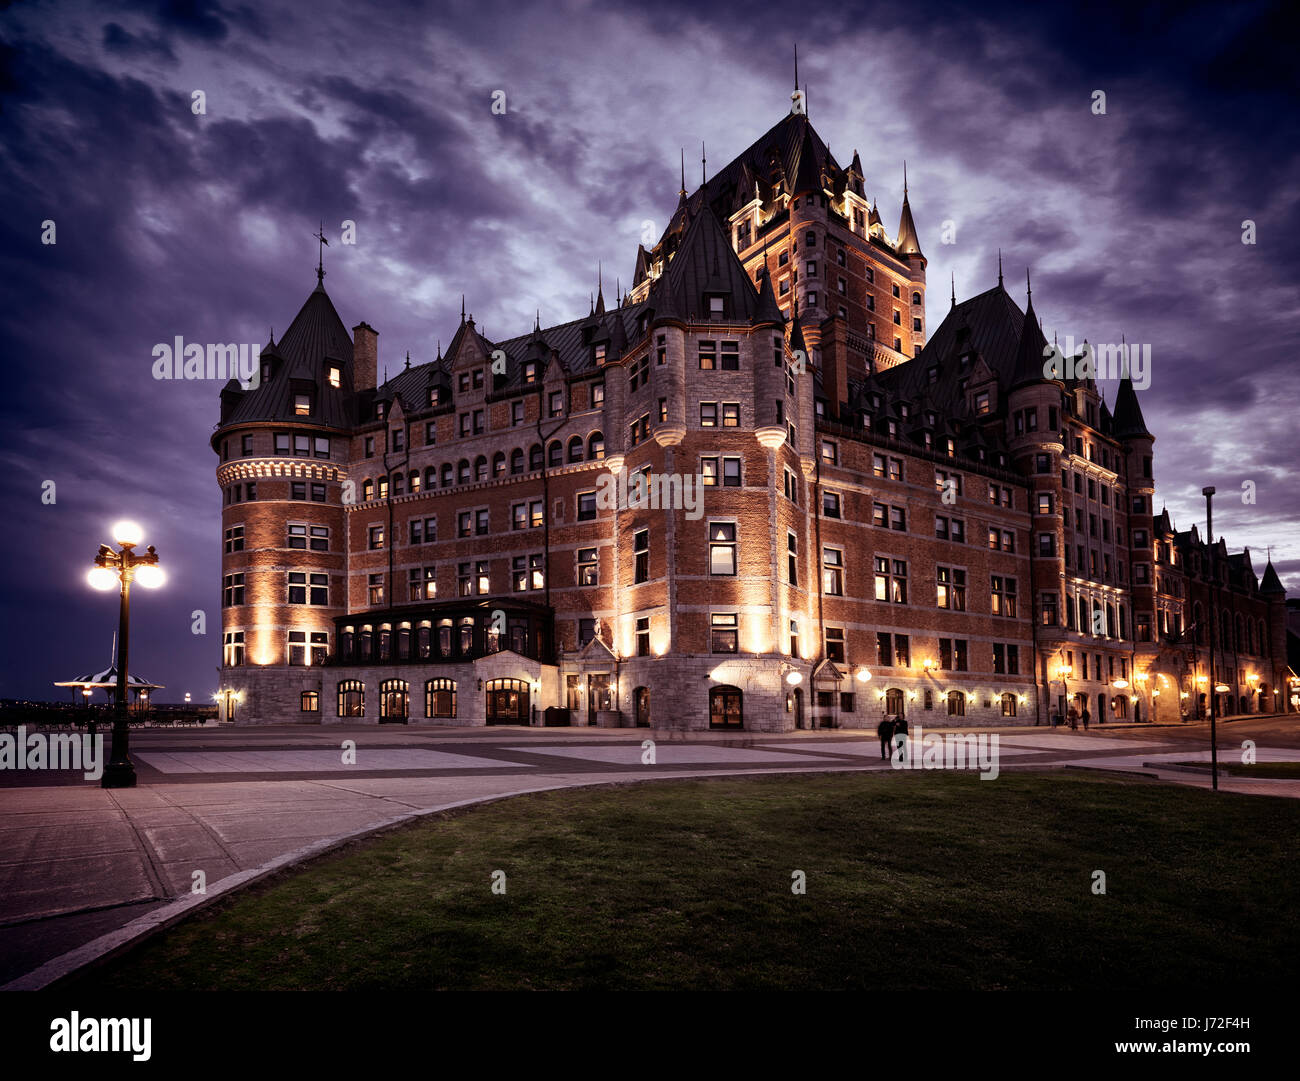 Licencia disponible en MaximImages.com - Fairmont Le Chateau Frontenac con espectacular cielo nocturno iluminado por las luces de la calle, gran hotel. Old Quebec, Canadá Foto de stock